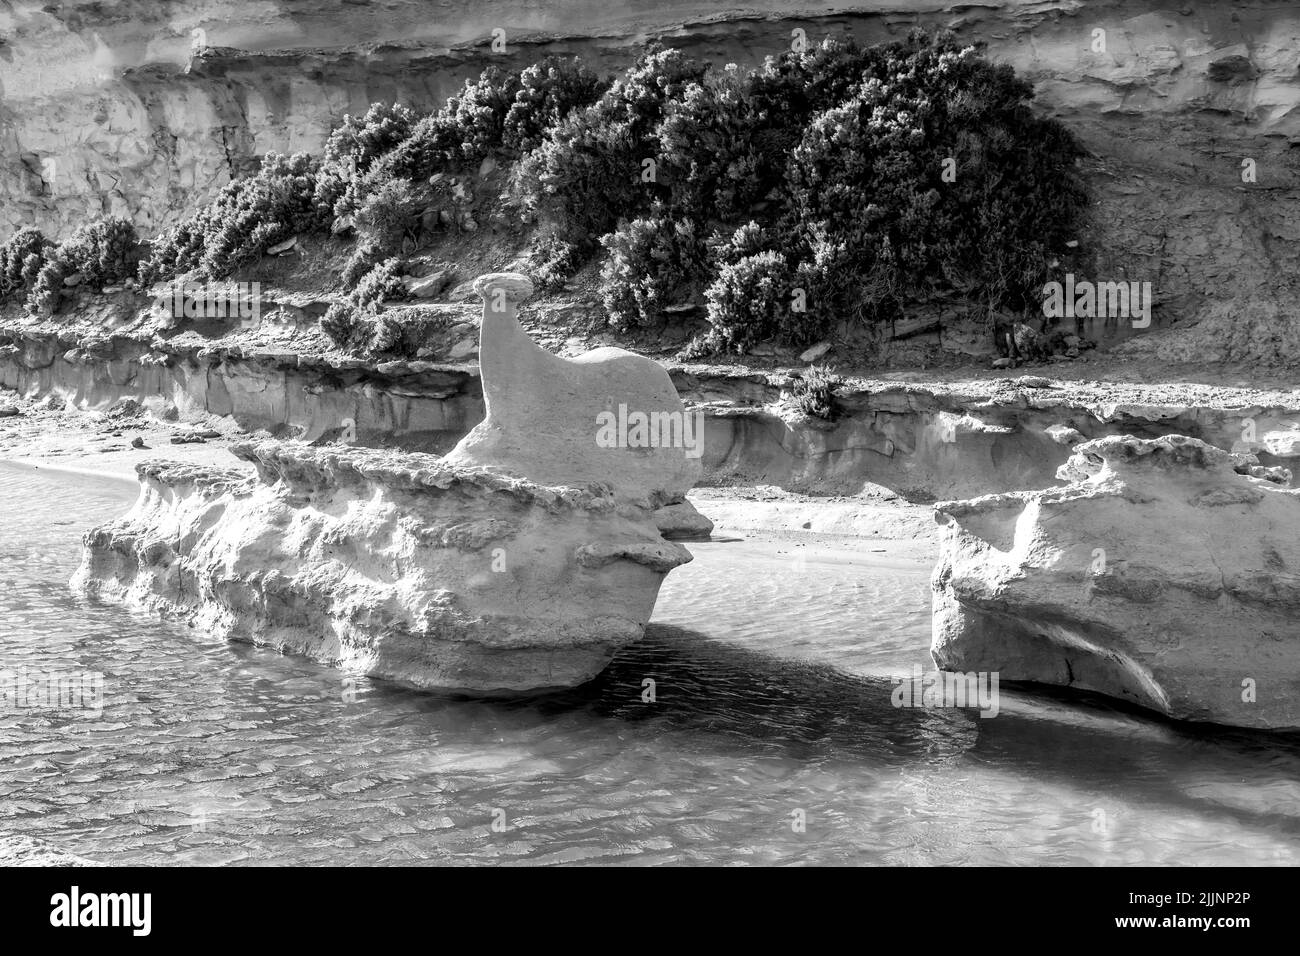 Colpo bianco e nero di un grande masso calcareo in una pozzanghera d'acqua su una piattaforma di taglio roccioso, eroso a forma di balena. Isole Maltesi, Malta Foto Stock